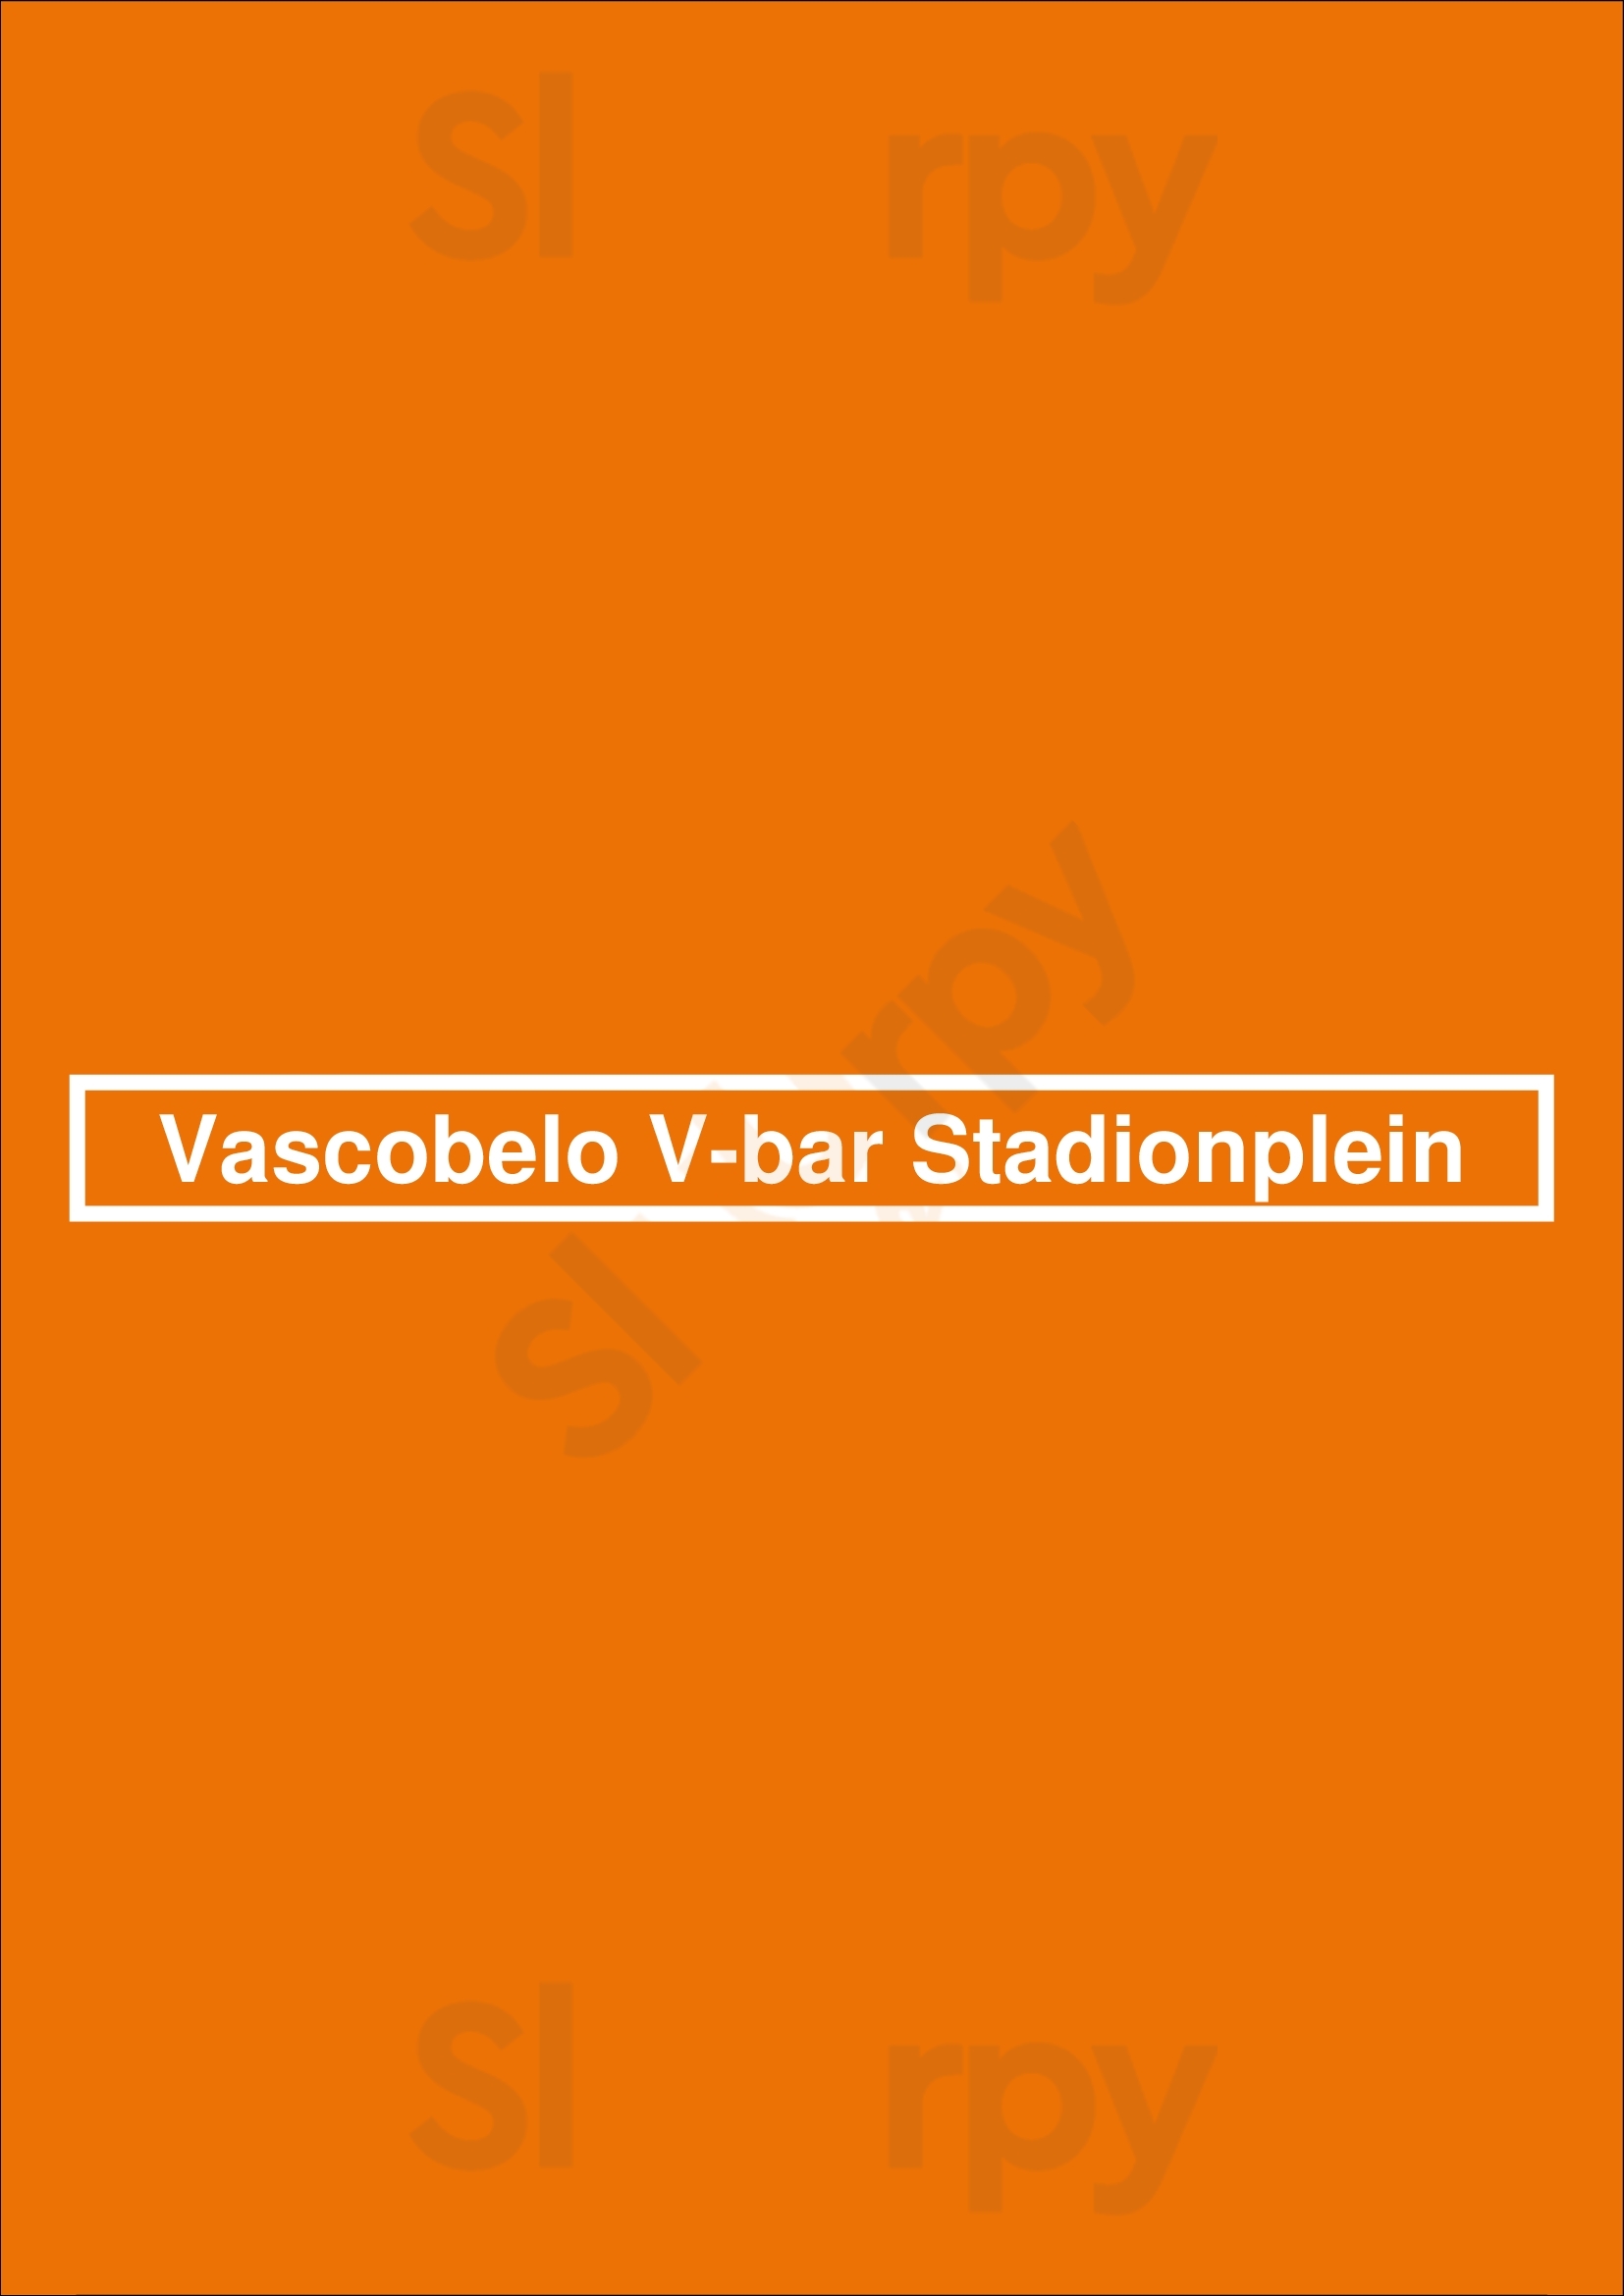 Vascobelo V-bar Stadionplein Amsterdam Menu - 1